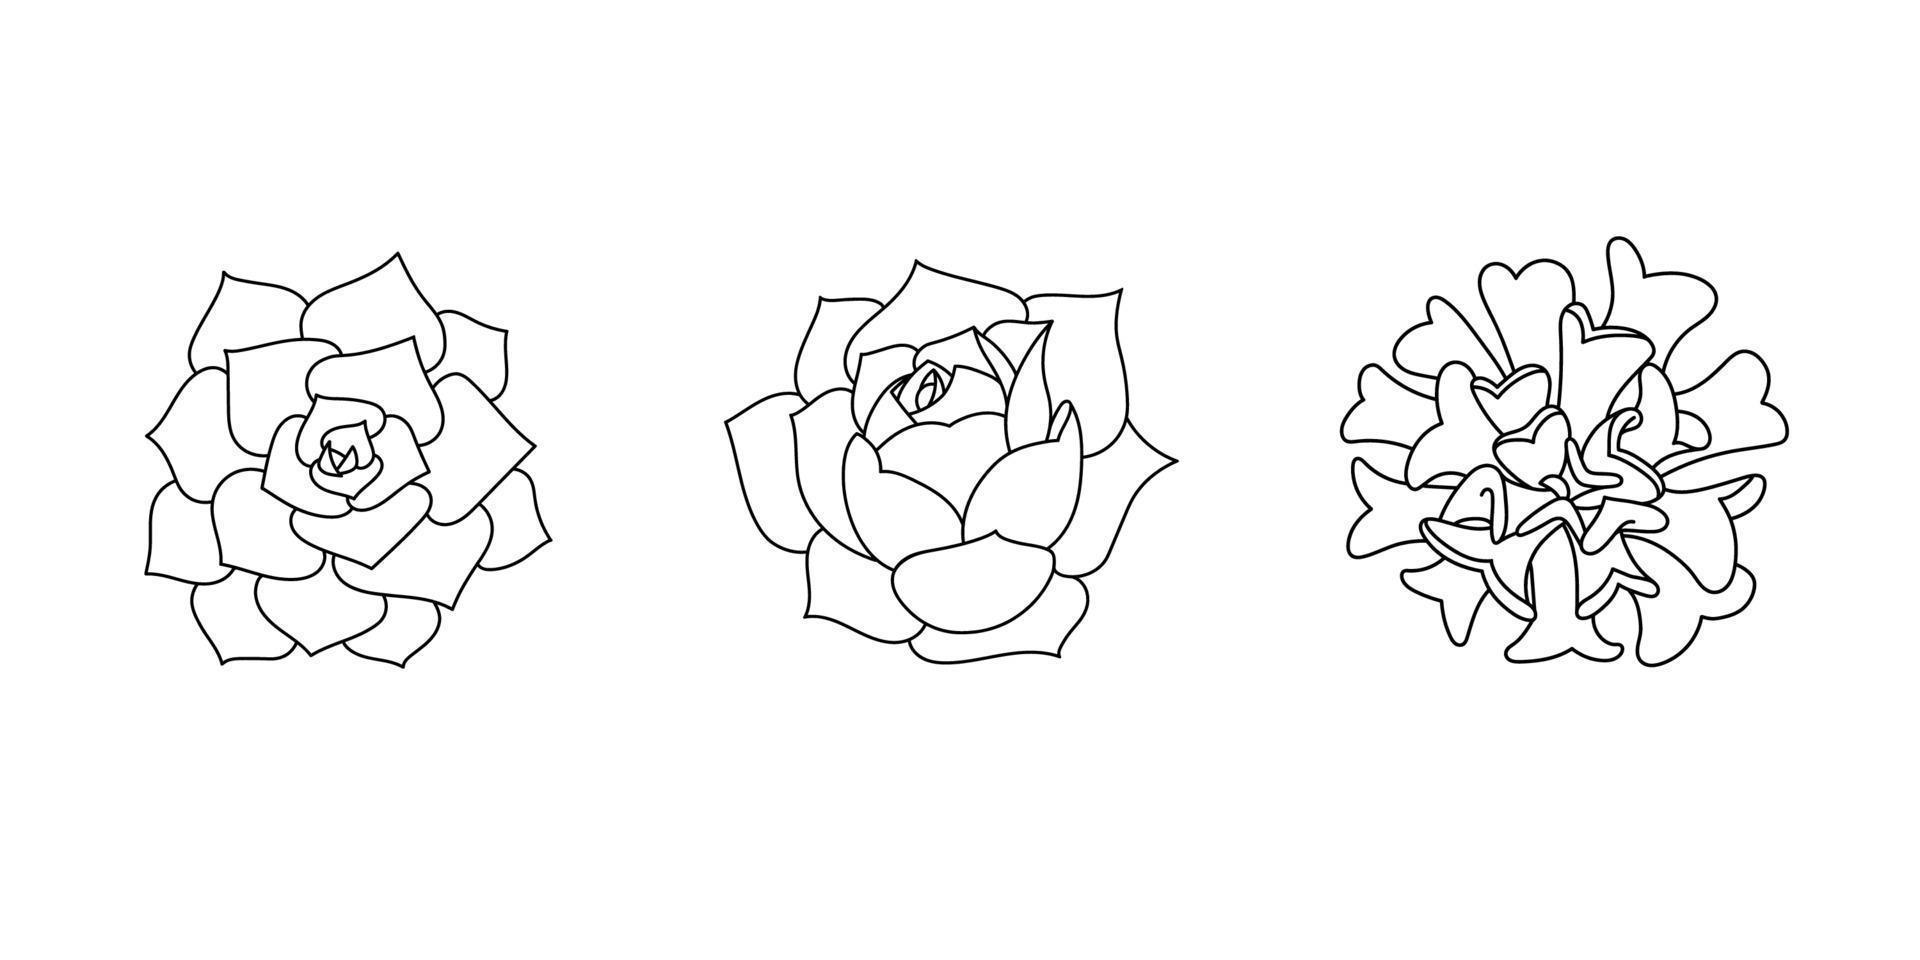 suckulenta echeveria set. handritad växt i doodle stil. grafisk skiss hem blomma. vektor illustration, isolerade svart element på en vit bakgrund